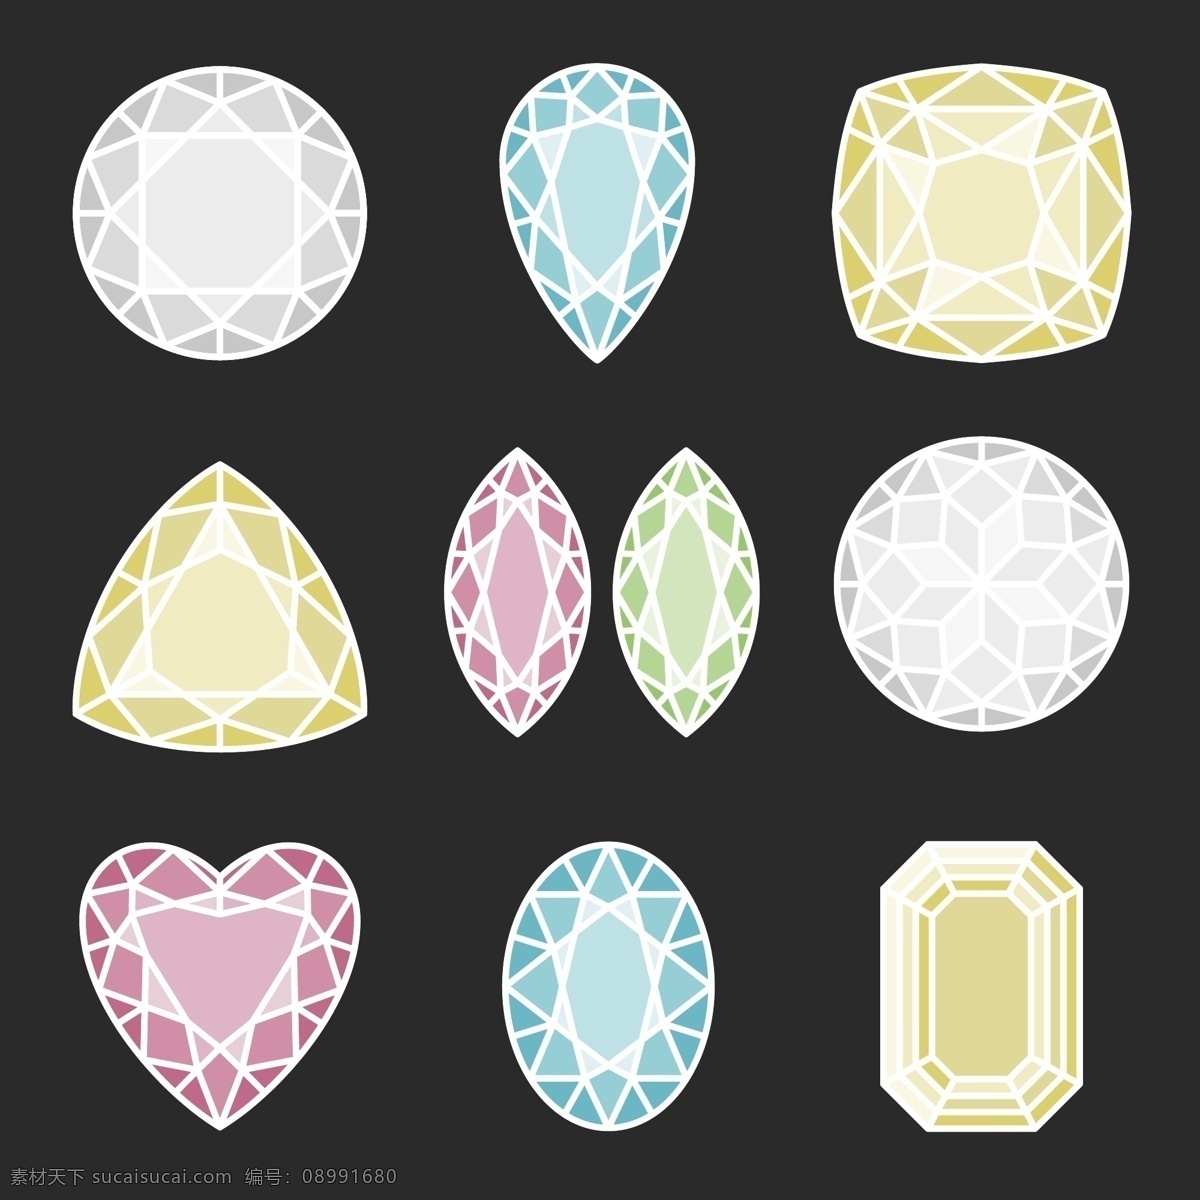 菱形 高贵 钻石 矢量 矢量素材 设计素材 背景素材